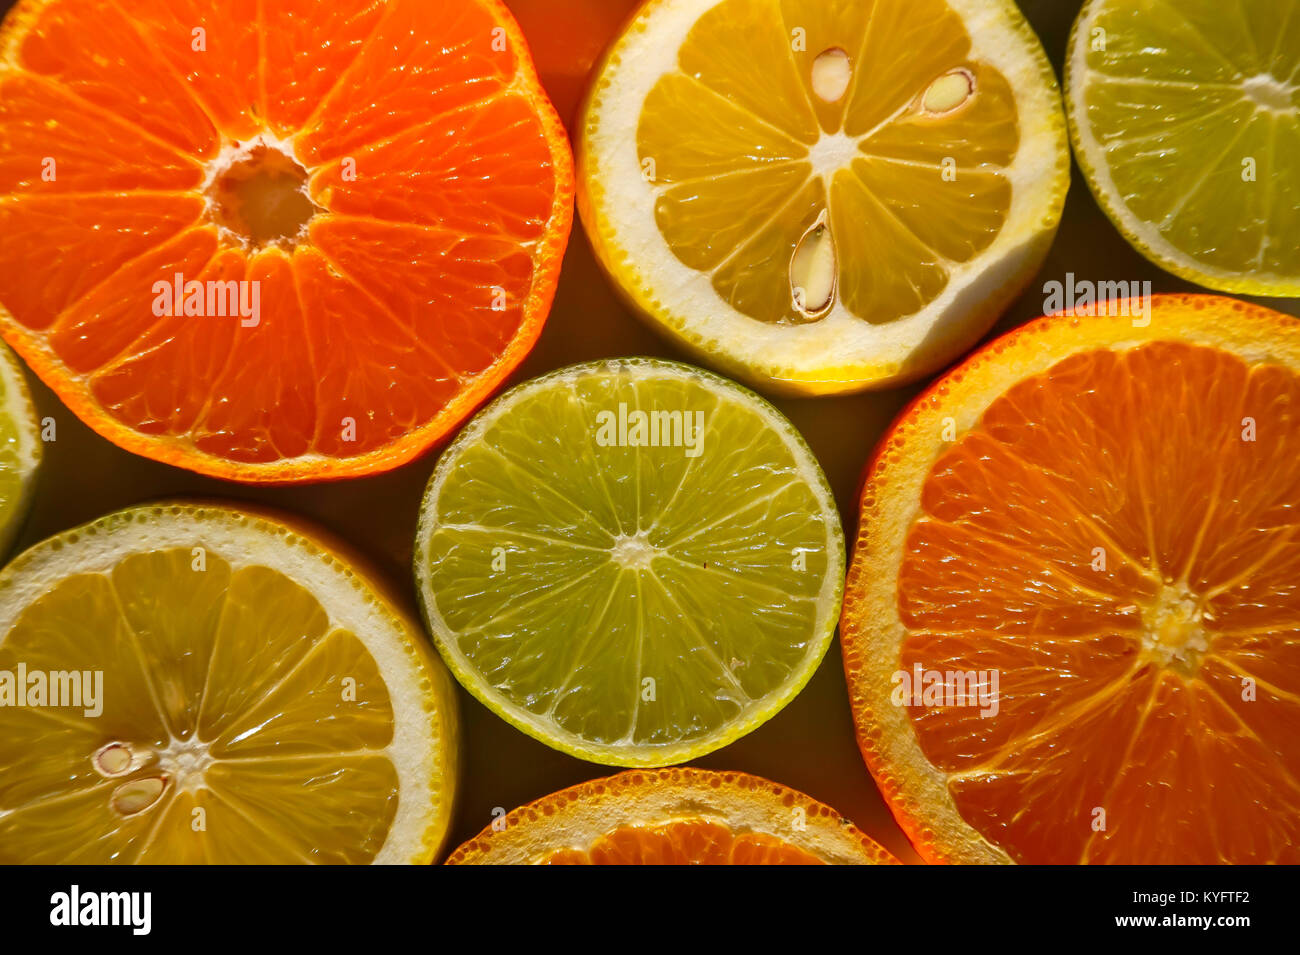 Scheiben von Orangen, Zitronen, Limonen und Mandarinen Stockfoto